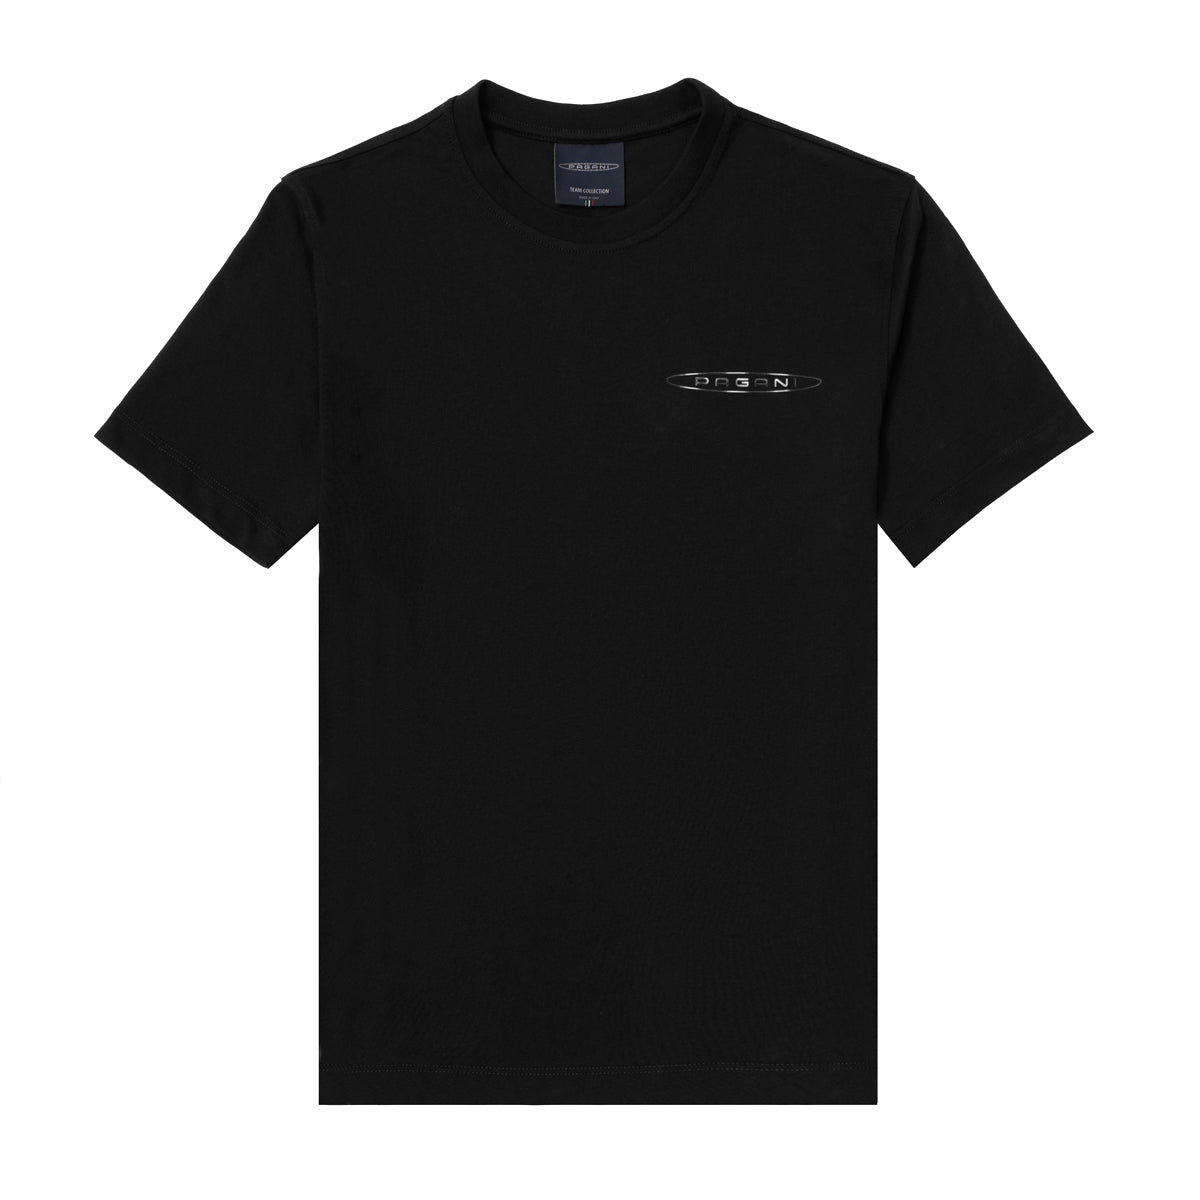 Camiseta para hombre logotipo lateral negra | Team Collection